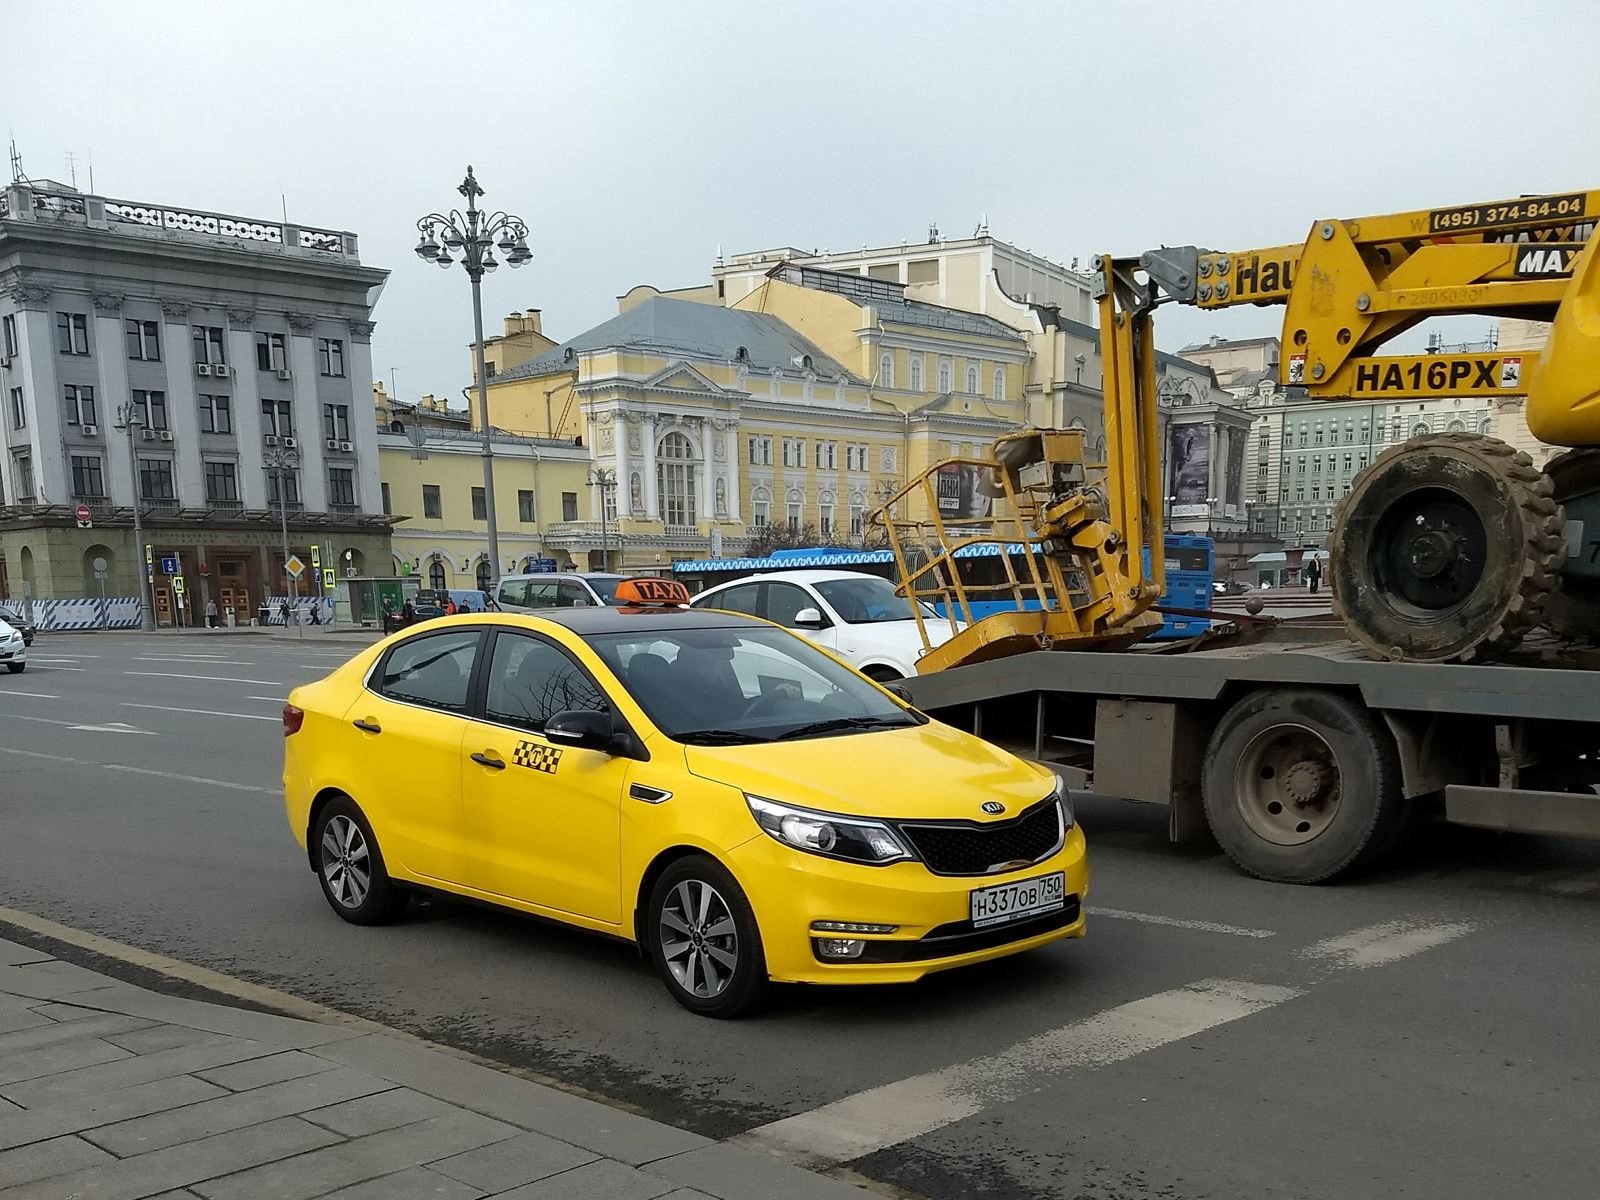 "بالصور" نظرة على السيارات الأكثر انتشارا في العاصمة الروسية موسكو 25